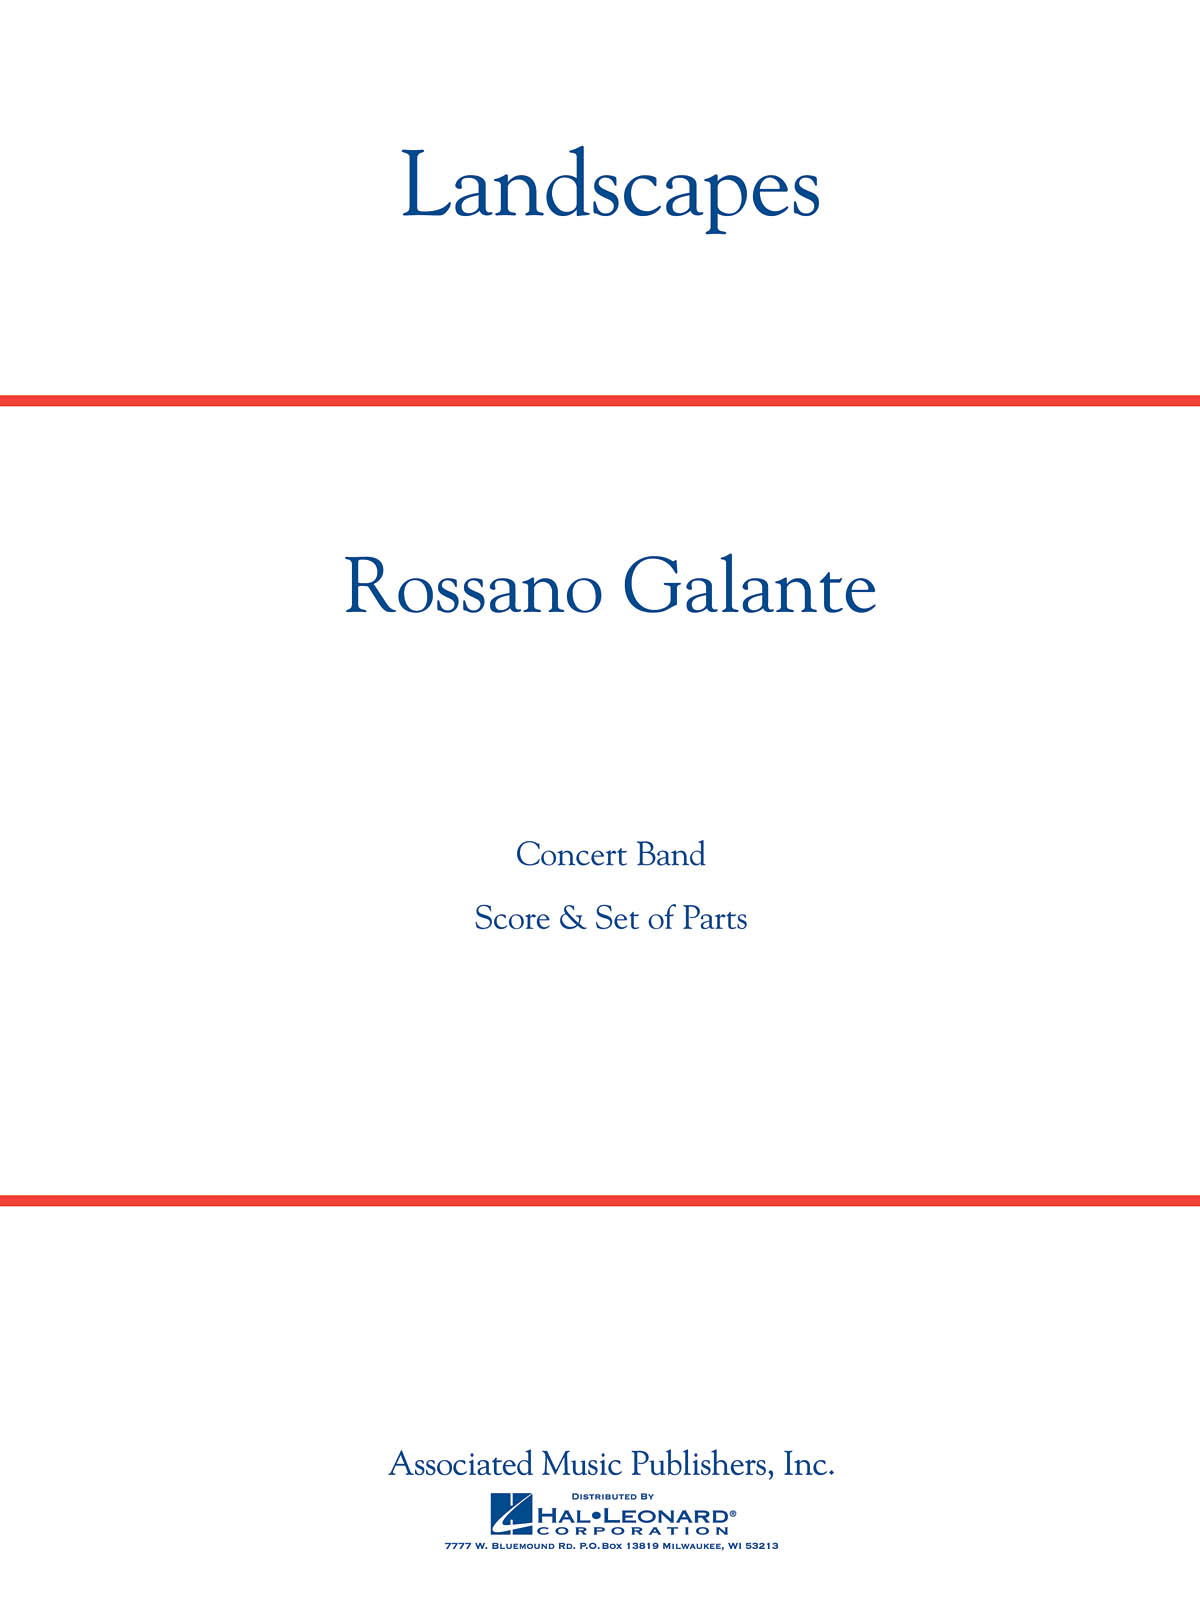 Rossano Galante: Landscapes: Concert Band: Score & Parts